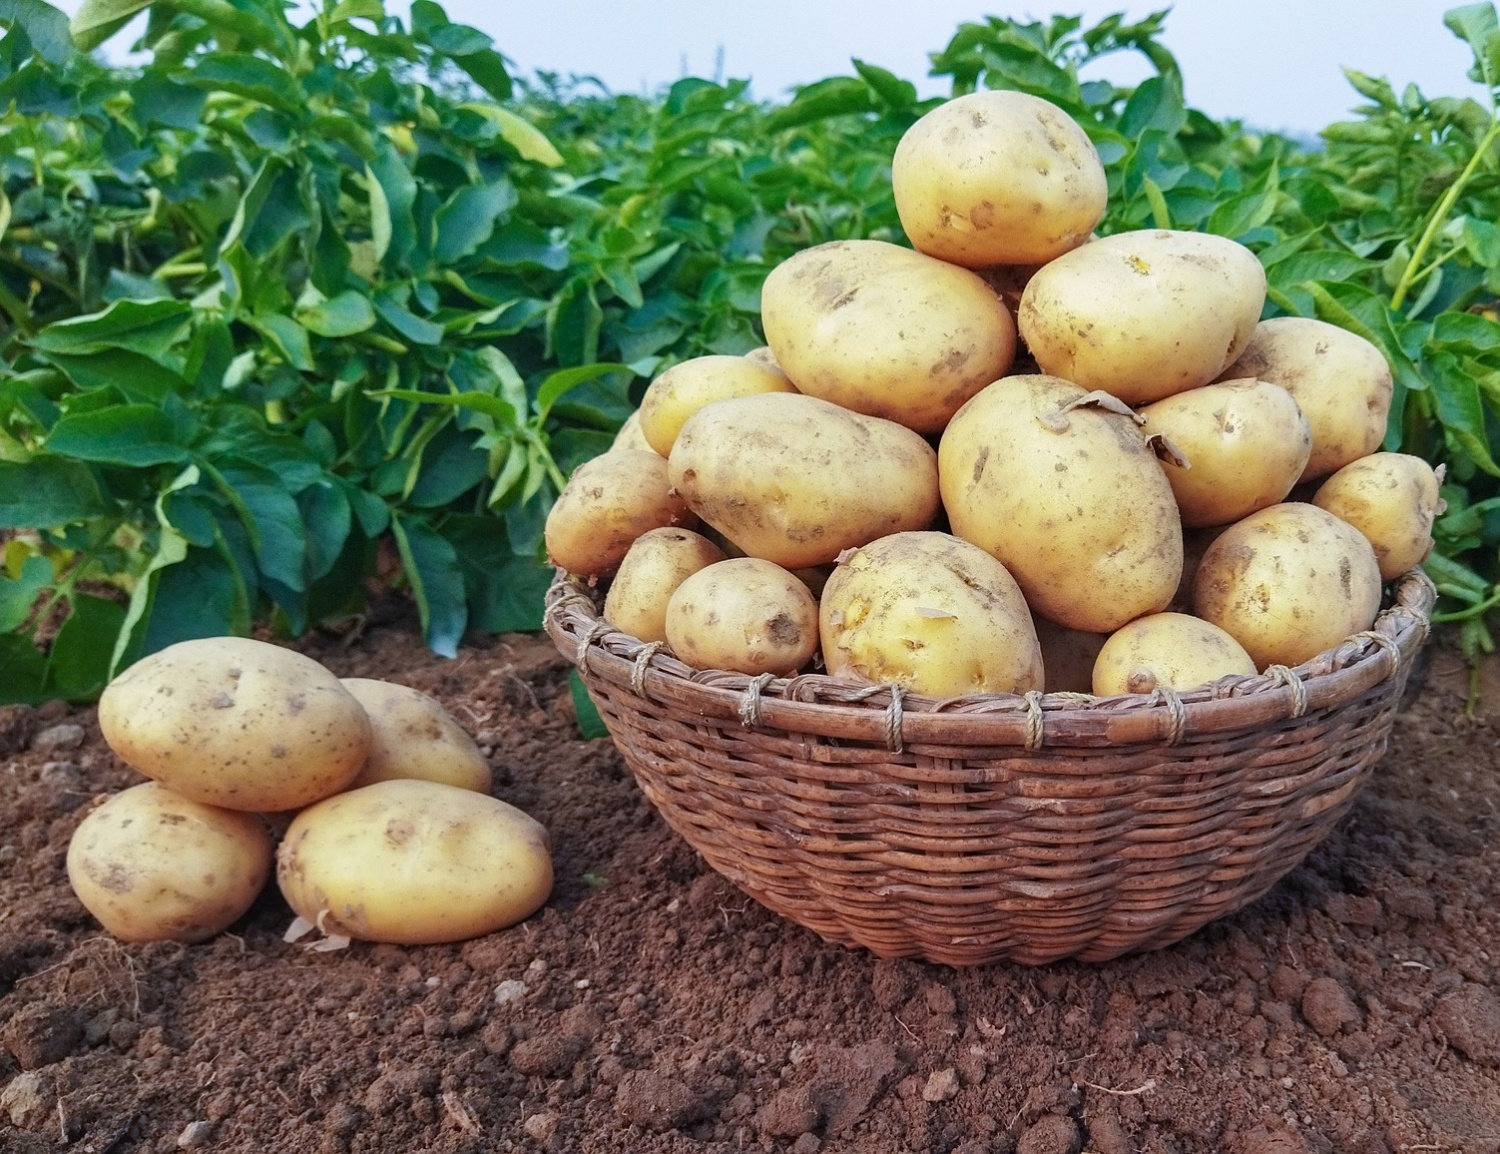 Картофель ранний сорт КОЛОМБО - «🌱МОЙ ЭКСПЕРИМЕНТ-высадила клубень вобычный пакетик, или, 🥔Как получить молодую картошку в июне. Покажурезультат 👍»